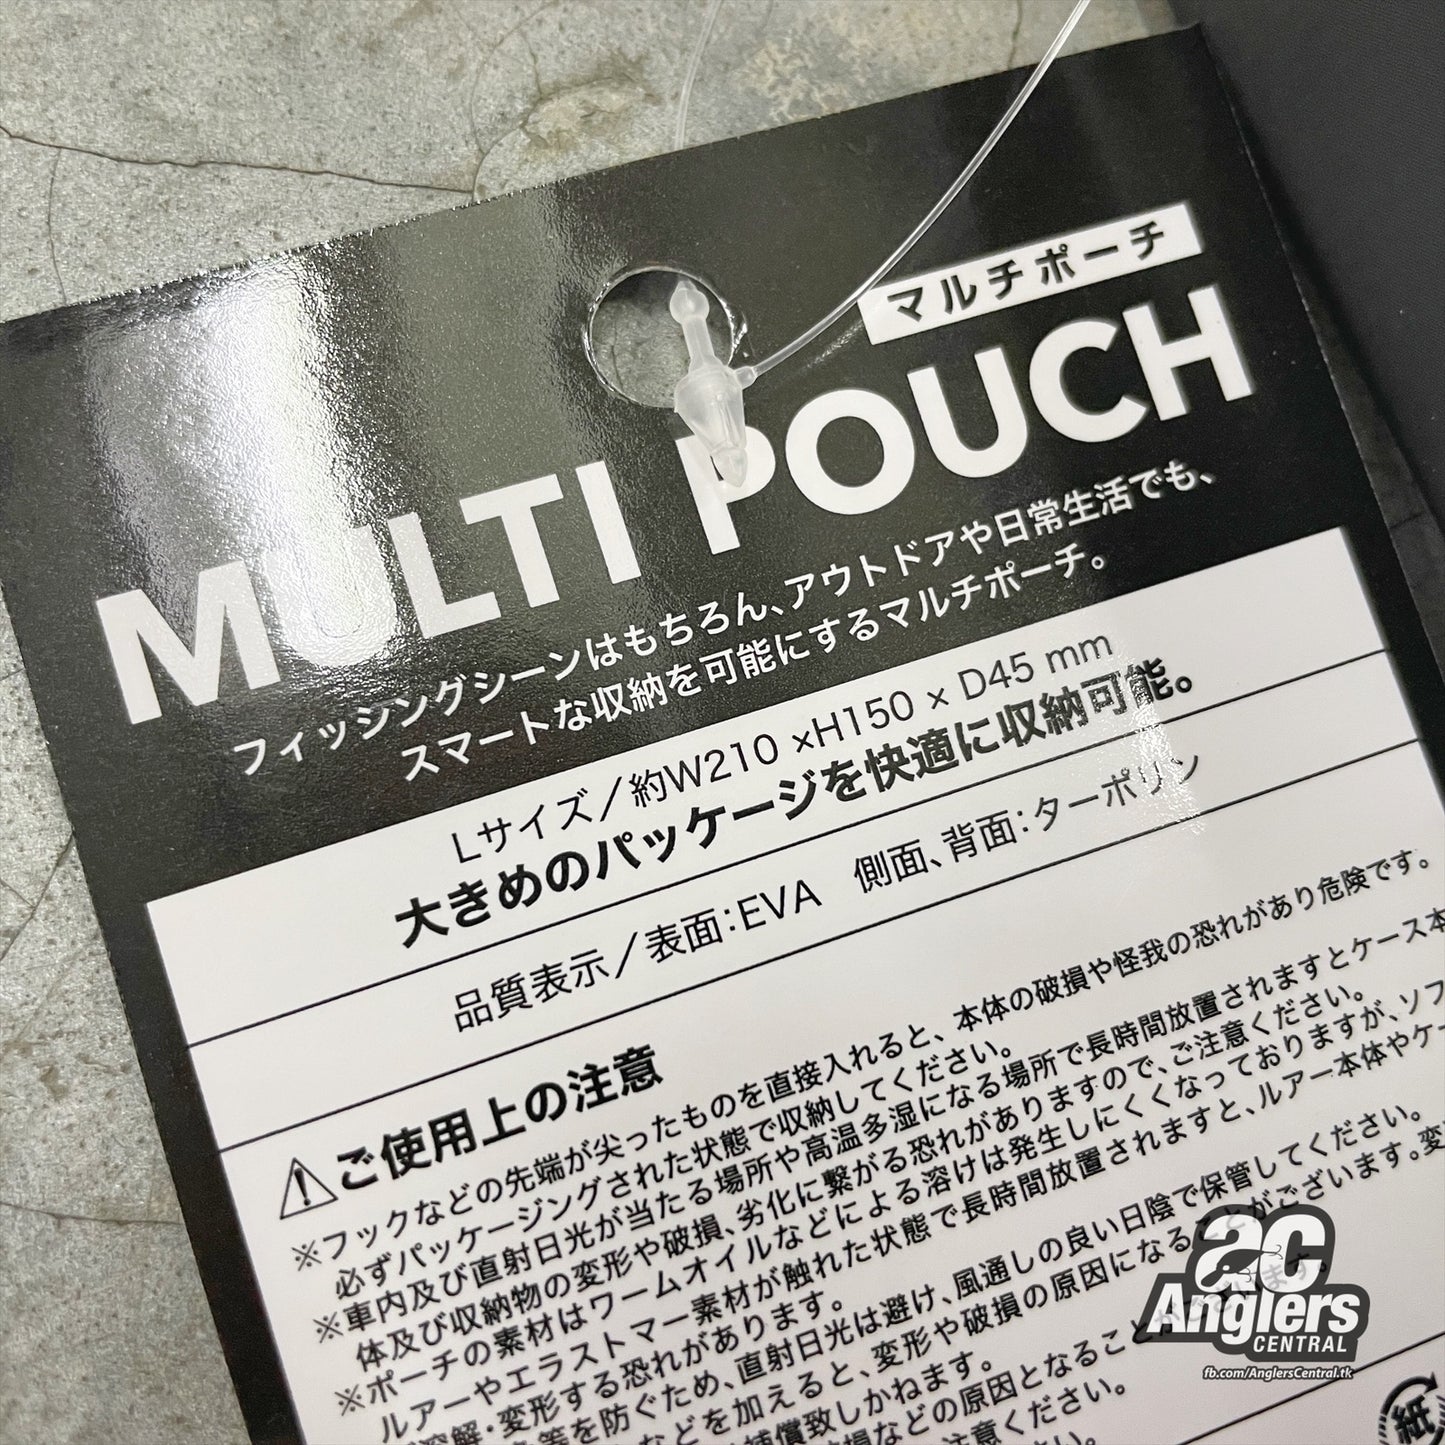 Multi Pouch (Jackall)